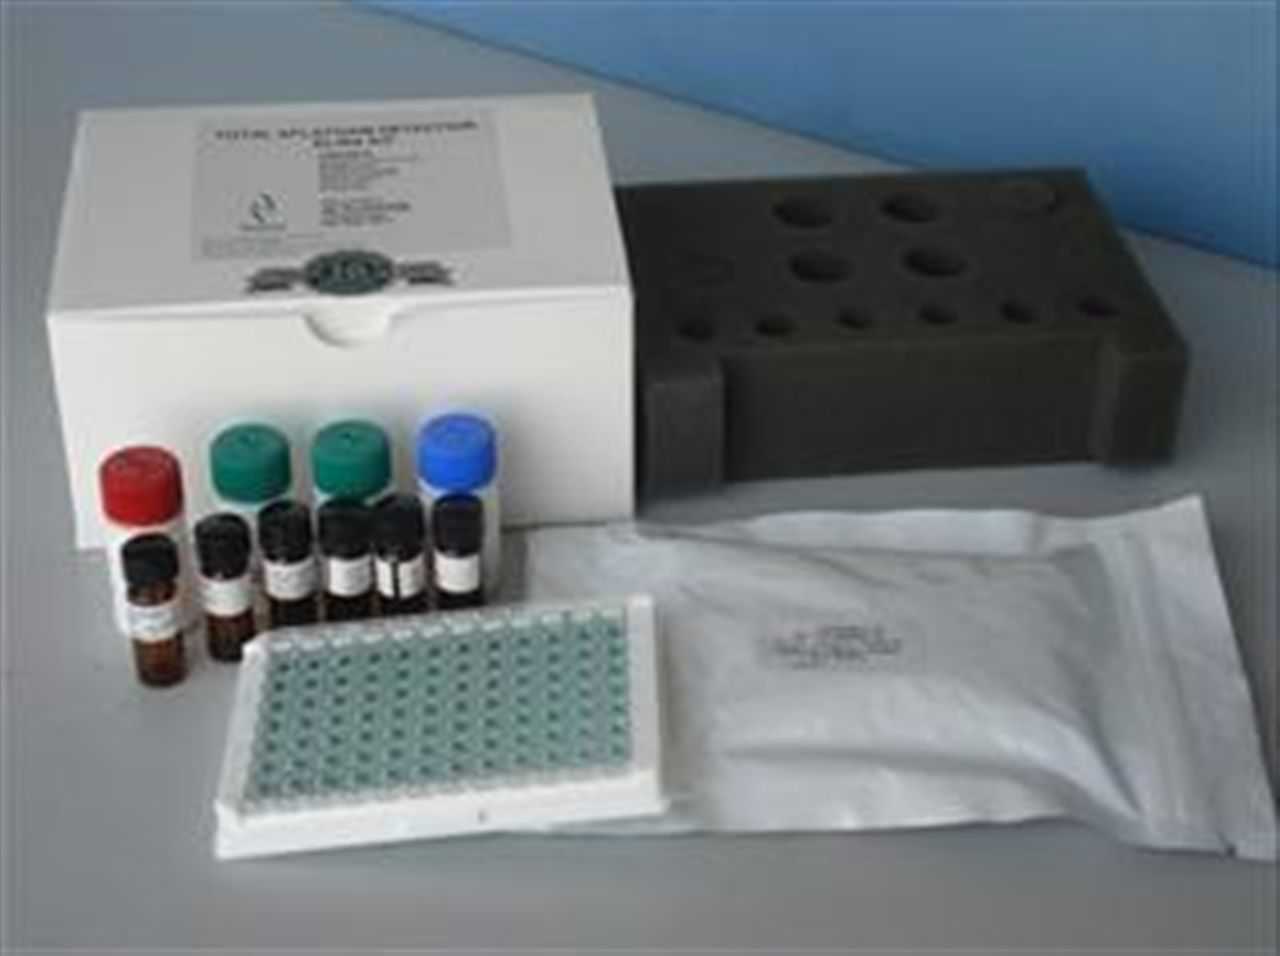 人NMP-22 elisa检测试剂盒价格